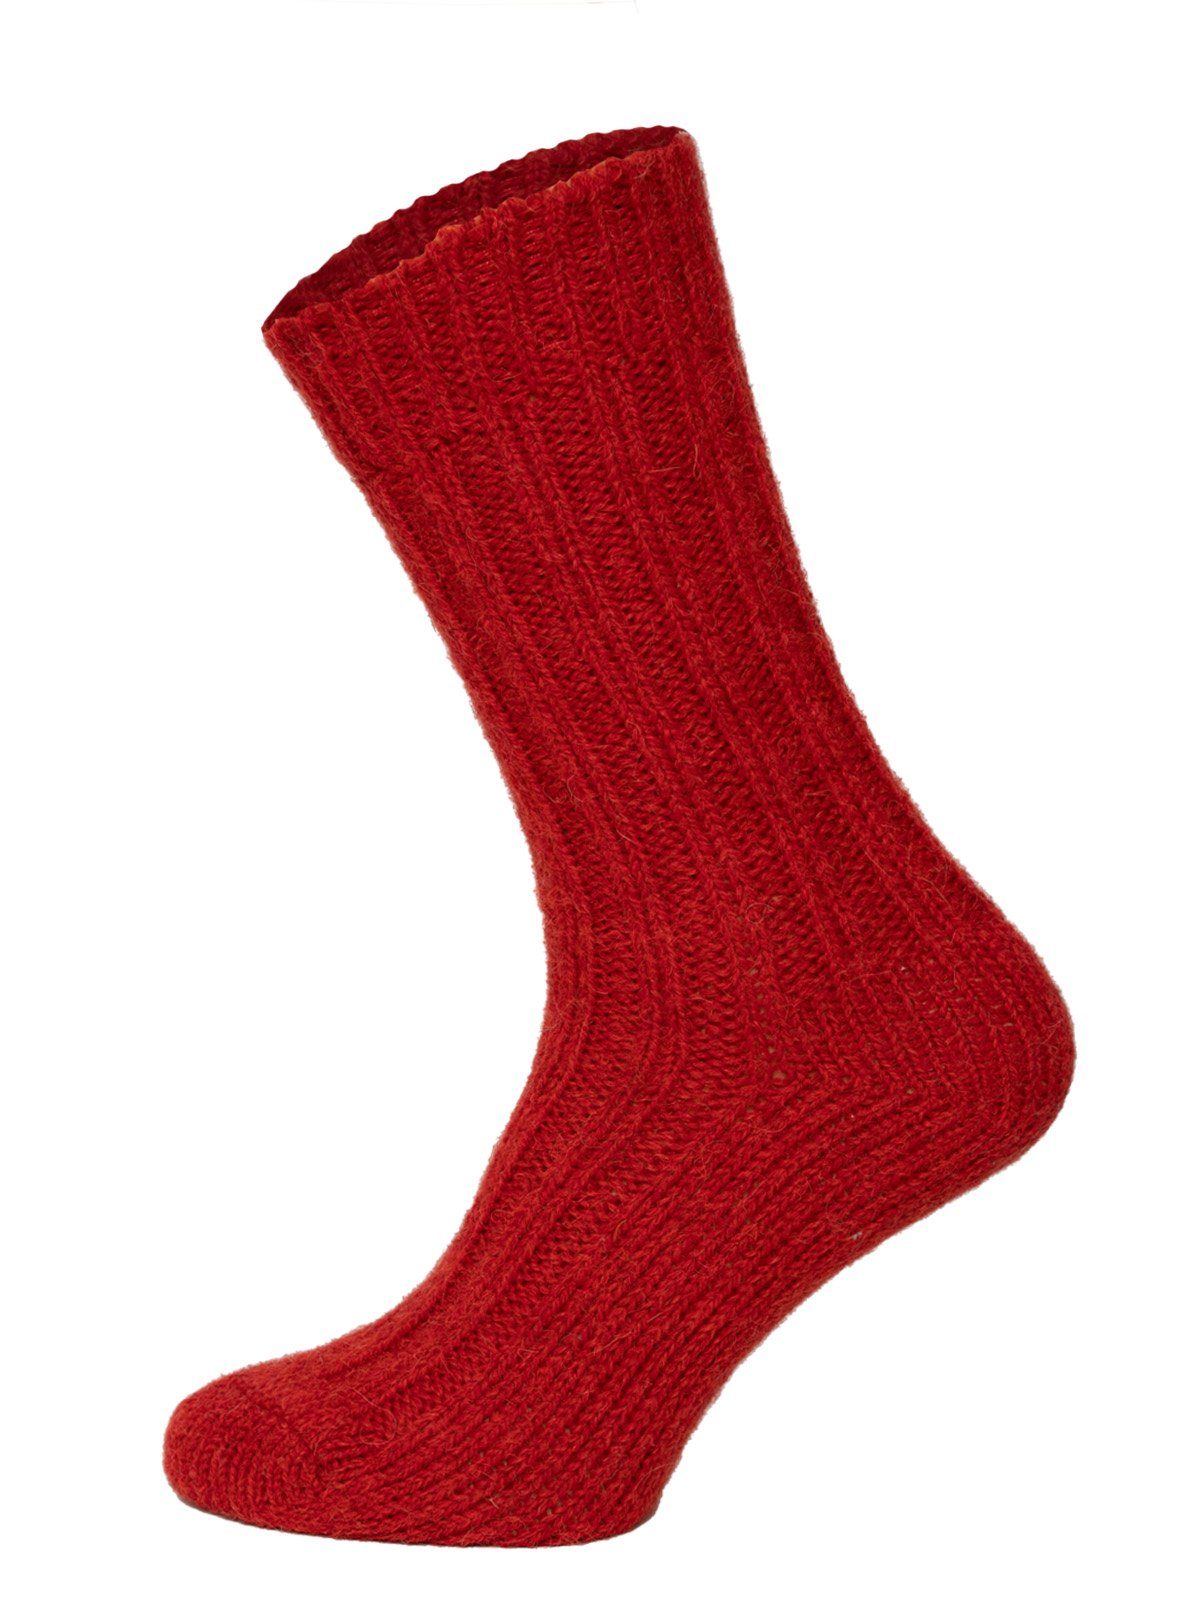 HomeOfSocks Socken Bunte Socken mit Umschlag mit Wolle und Alpakawolle Strapazierfähige und warme Socken mit 40% Wollanteil und Alpakawolle Rot